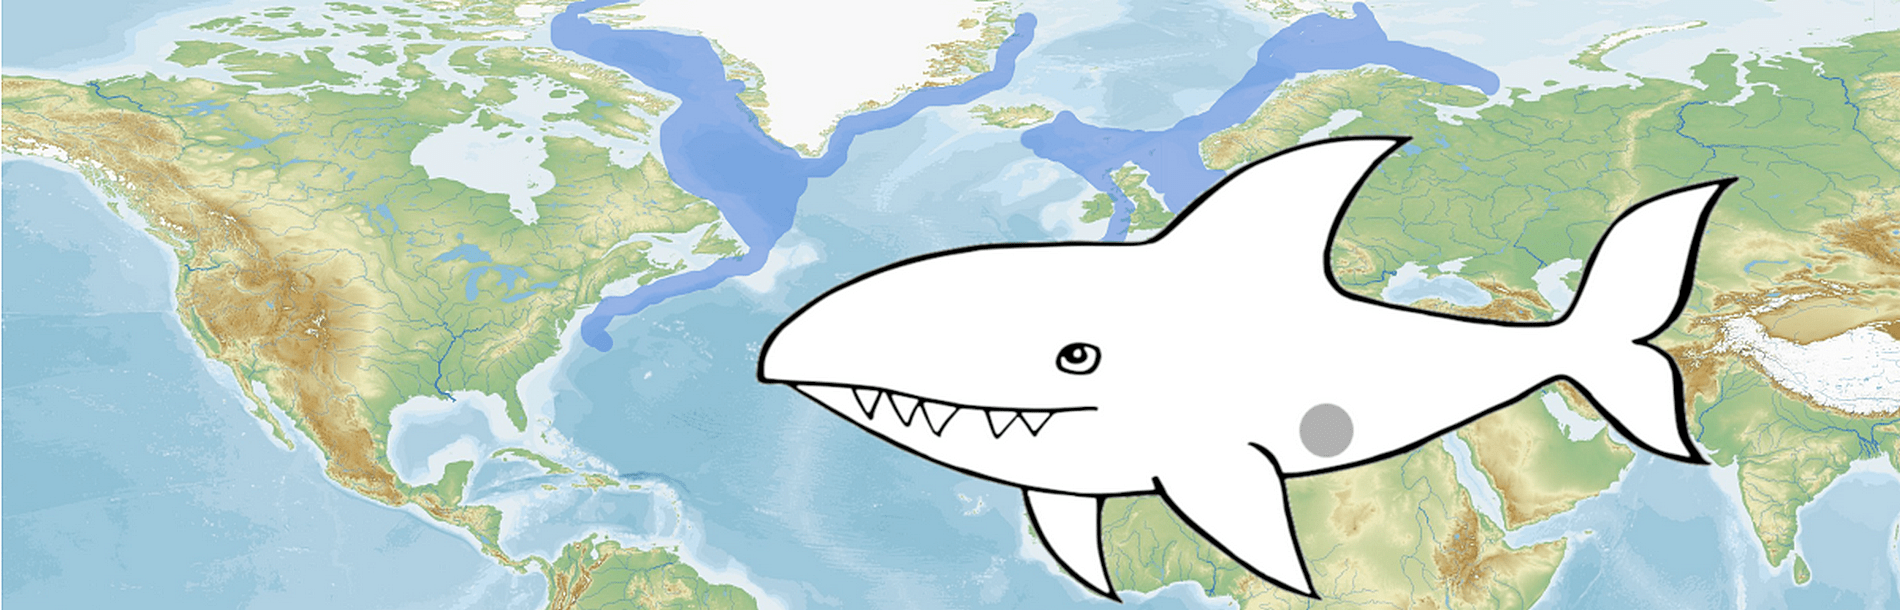 Rekin polarny. 448 lat podmorskiej żeglugi [podcast]